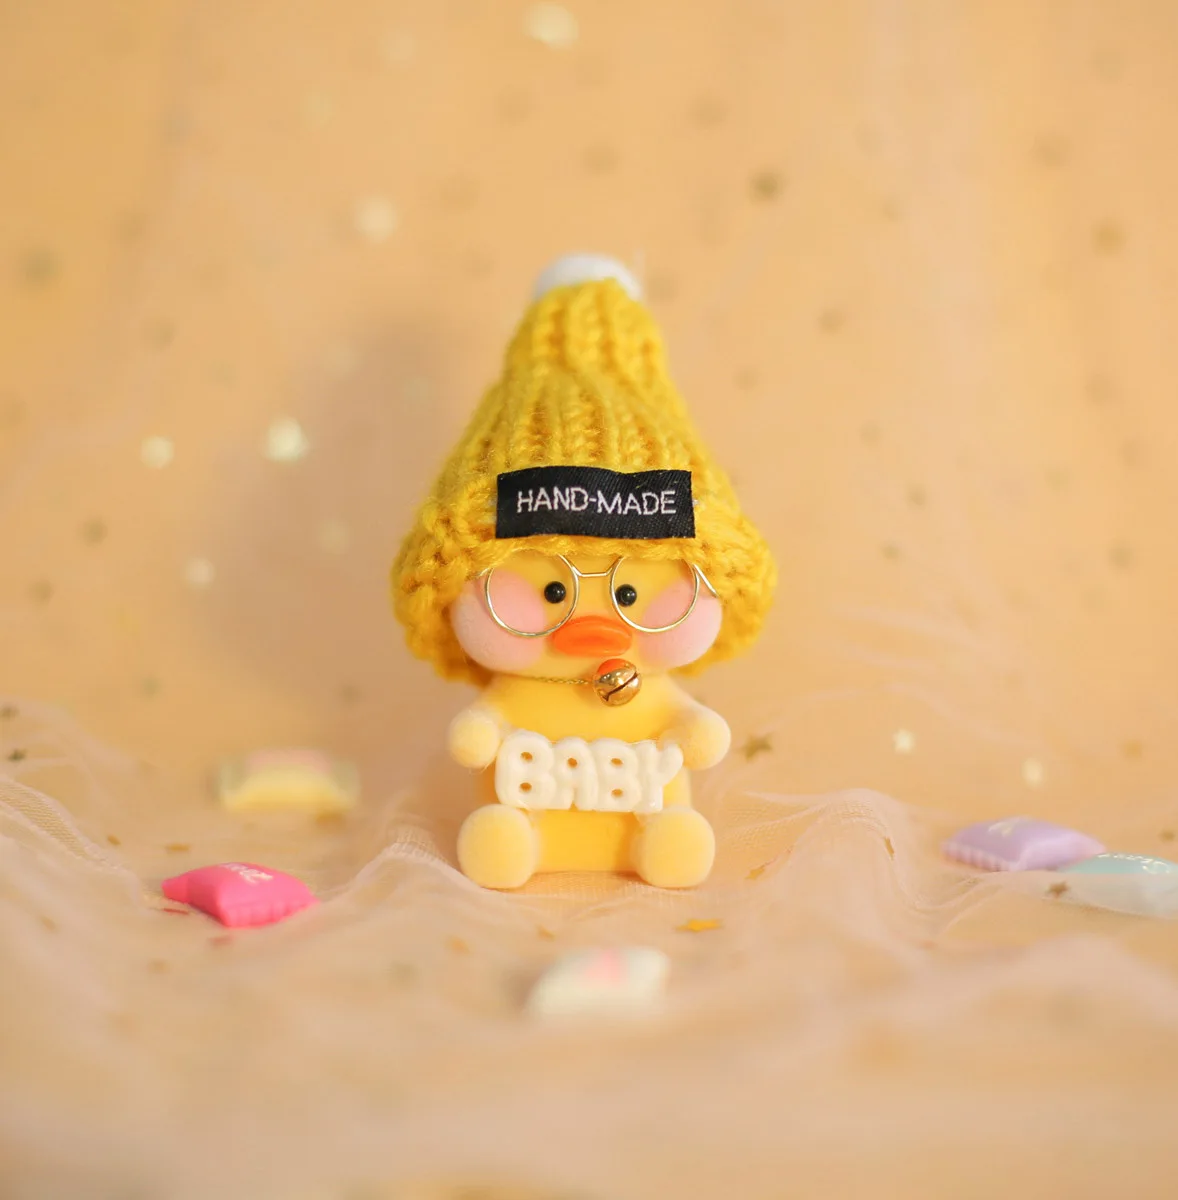 Lalafanfan симпатичный брелок каваи кафе Мими желтый утка действие фигурный брелок сумки украшения игрушки для детей подарок для девочек - Цвет: B